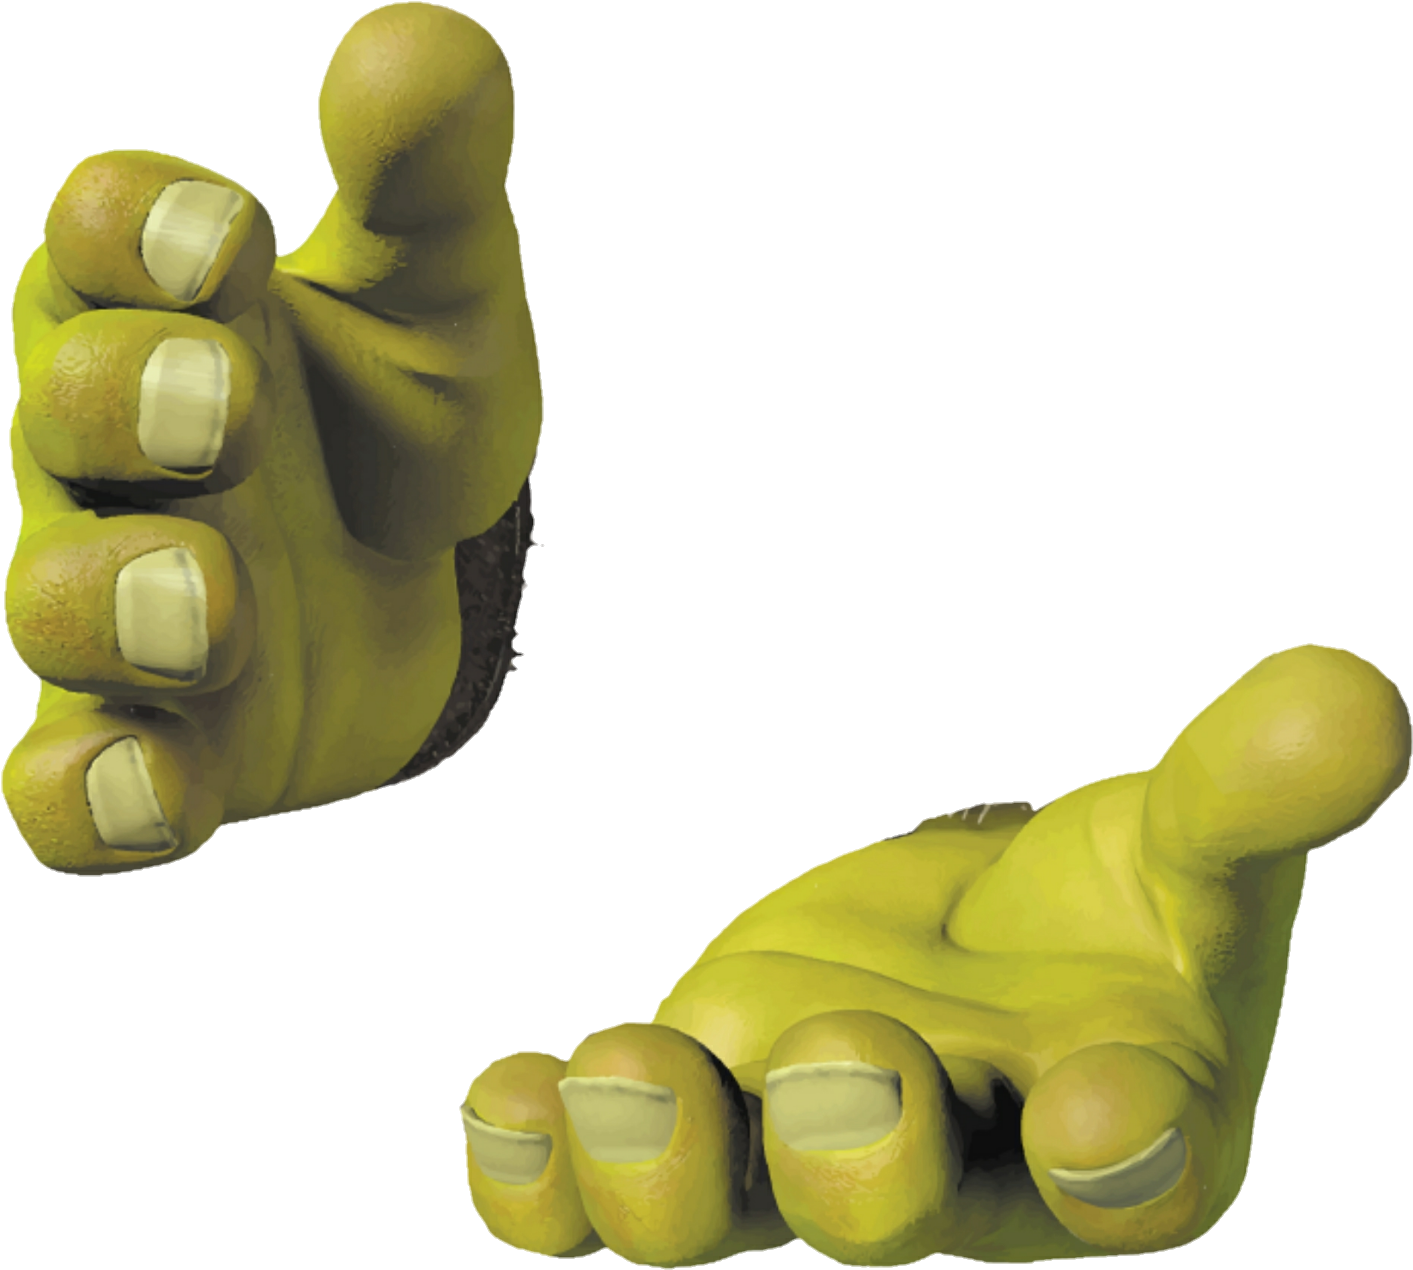 Shrek Thumbs Up Gesture PNG image